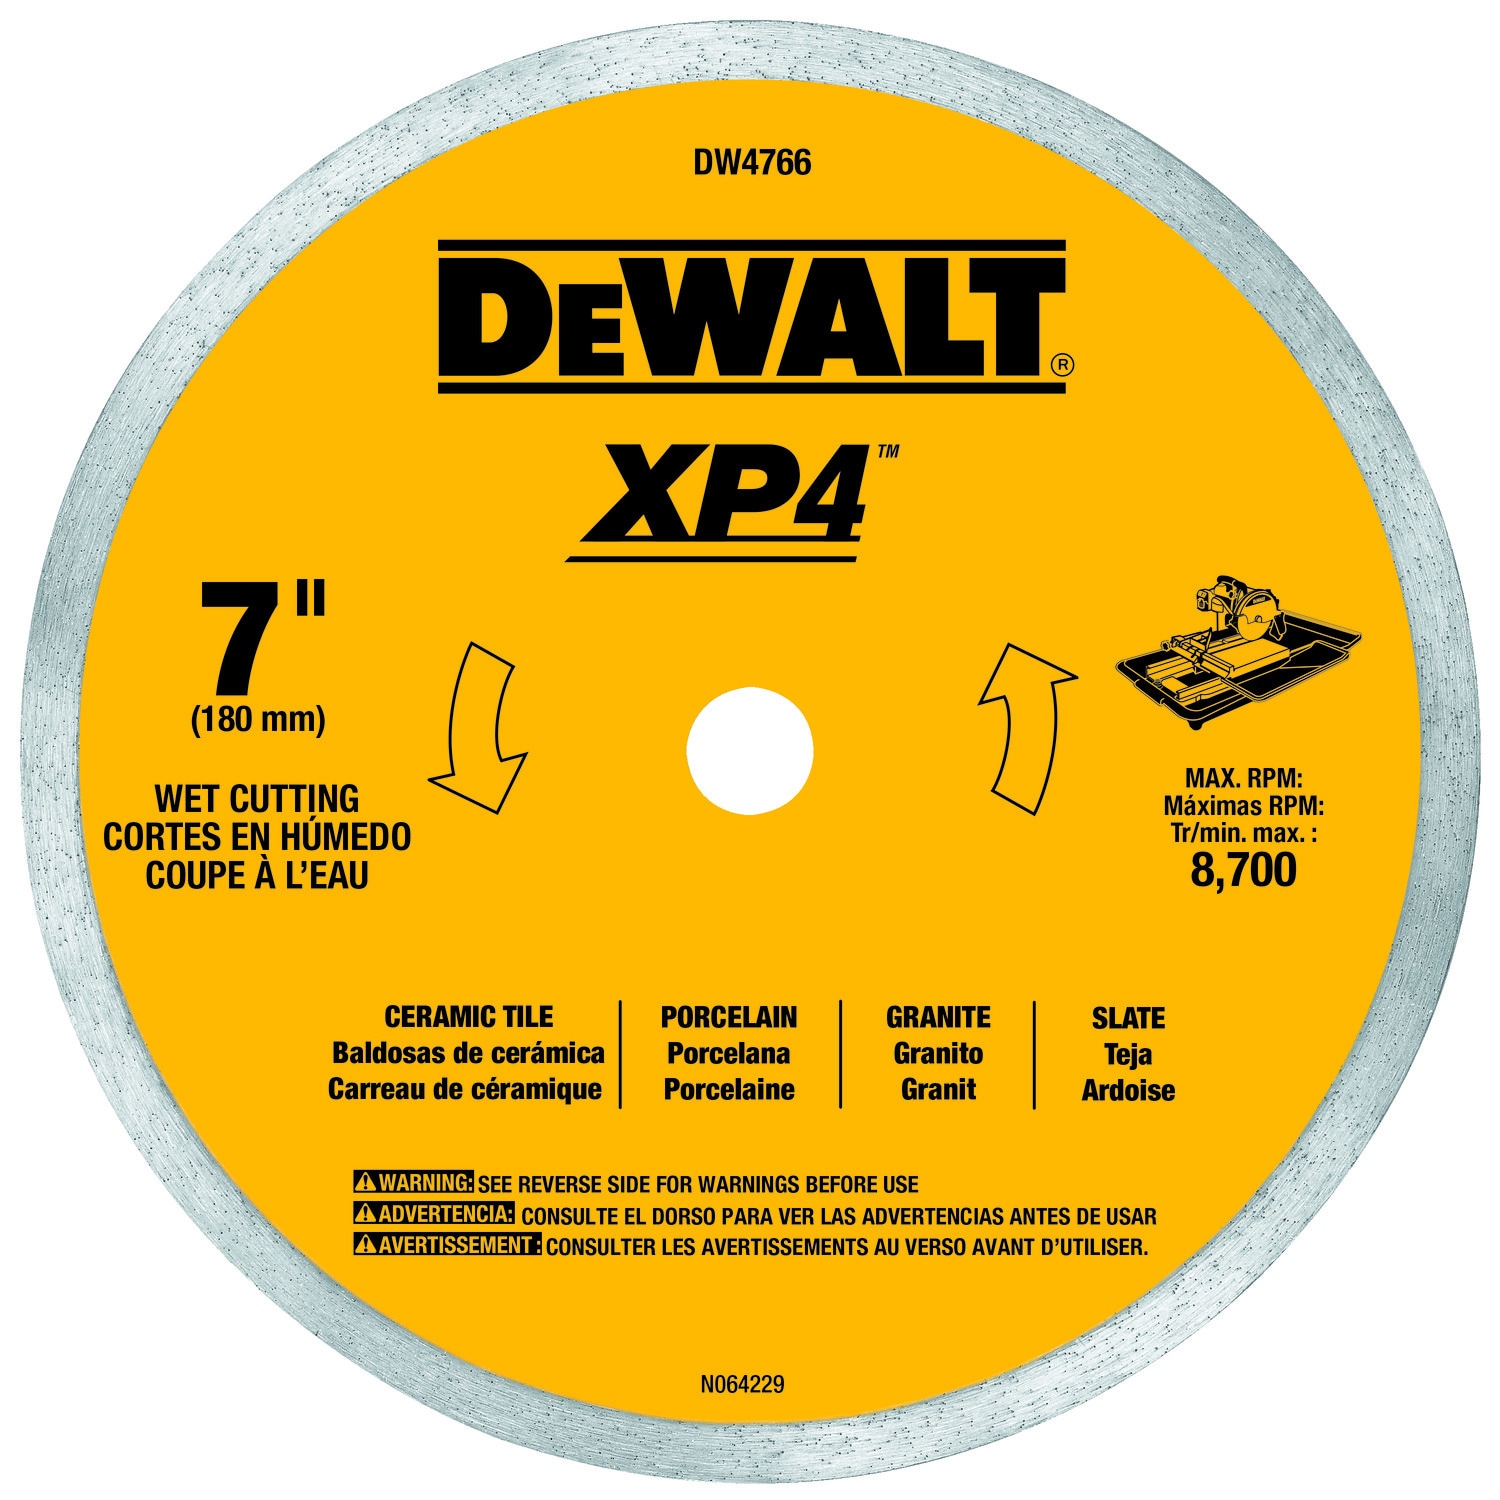 DEWALT Continuous Rim 7" Wet Diamond Tile Blade Xp4 DW4766 for sale online 